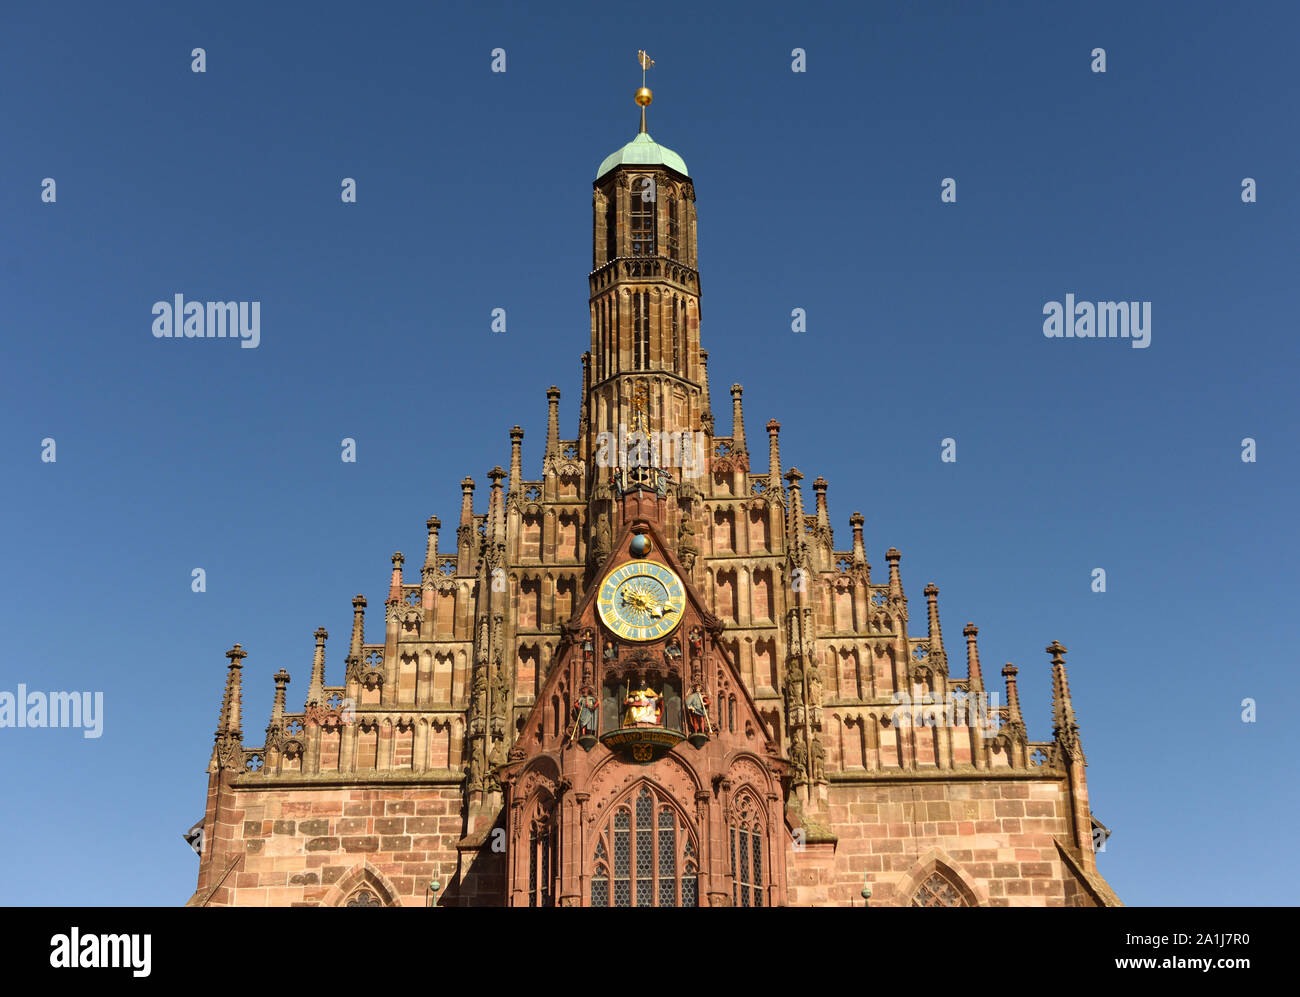 L'église Notre Dame (Frauenkirche) au Nürnberg la Hauptmarkt (place centrale) à Nuremberg, Allemagne. Banque D'Images